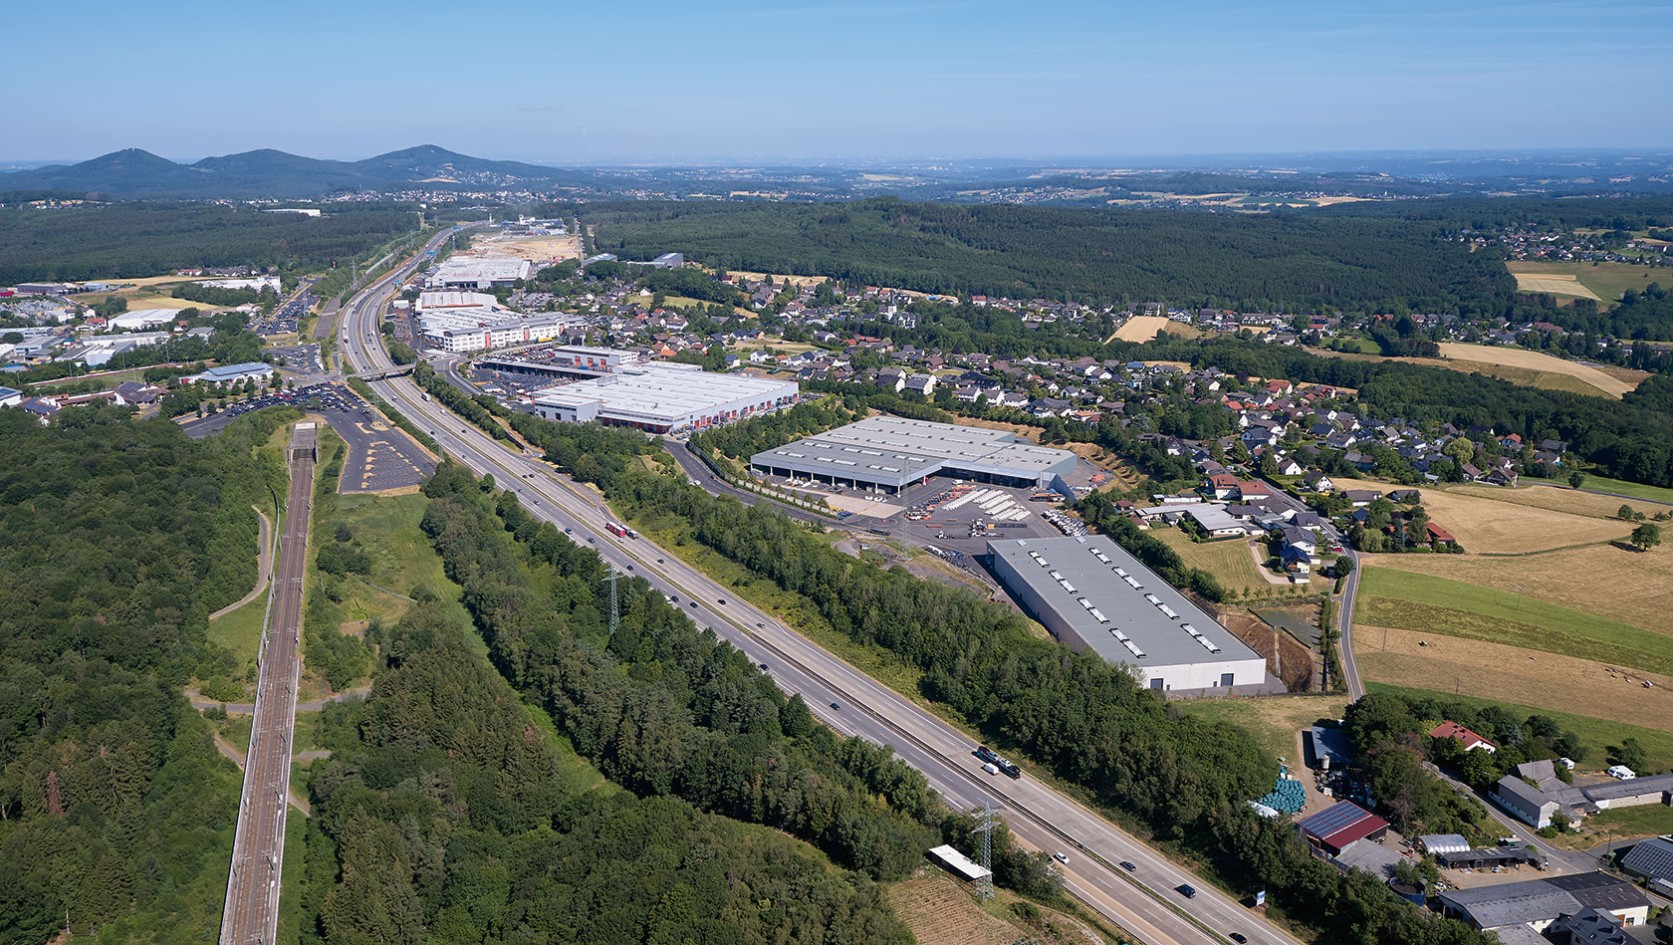 WIRTGEN GmbH: Brand Headquarters in Windhagen 